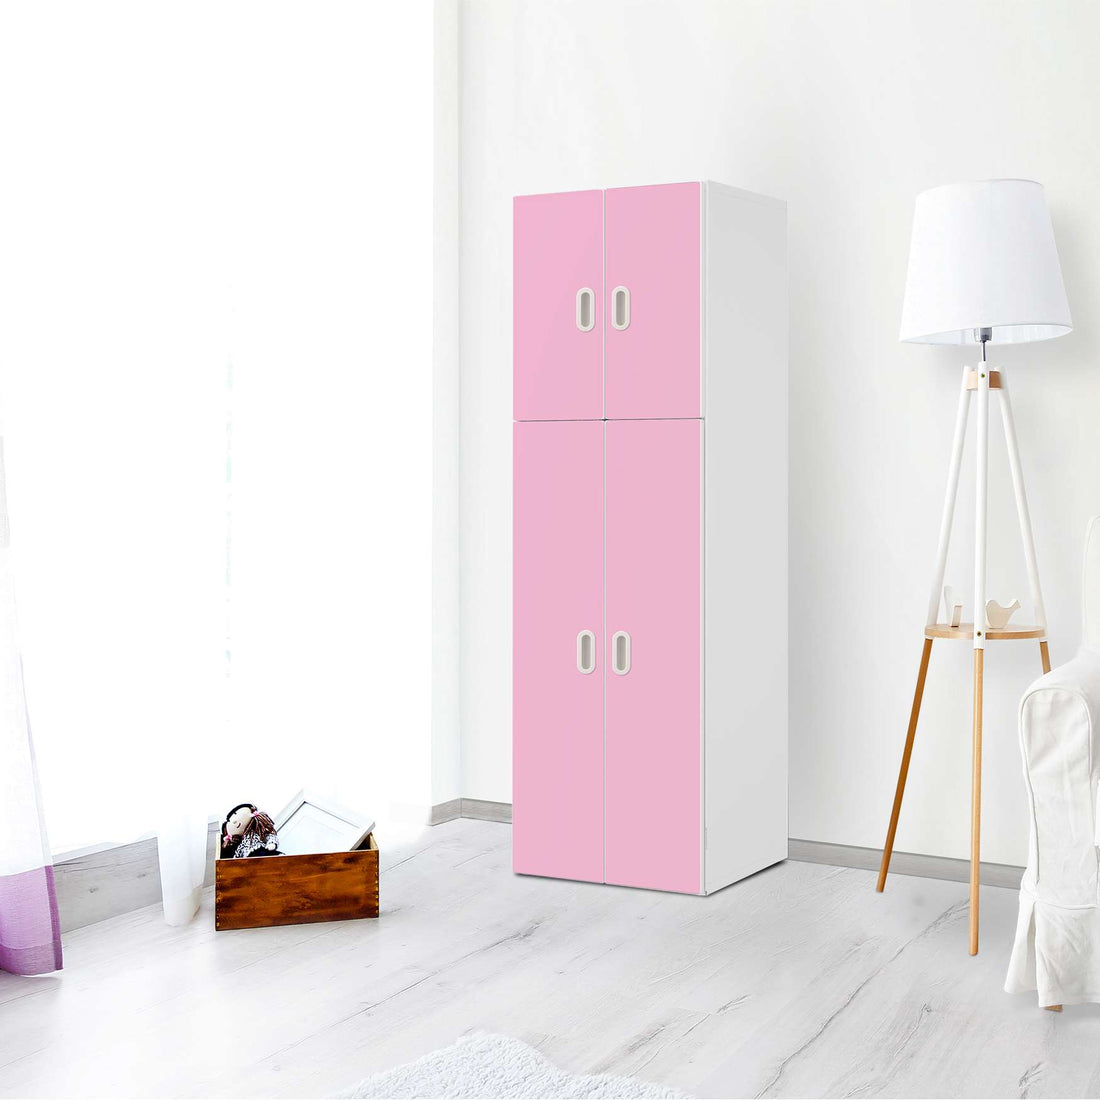 Selbstklebende Folie Pink Light - IKEA Stuva / Fritids kombiniert - 2 große Türen und 2 kleine Türen - Kinderzimmer